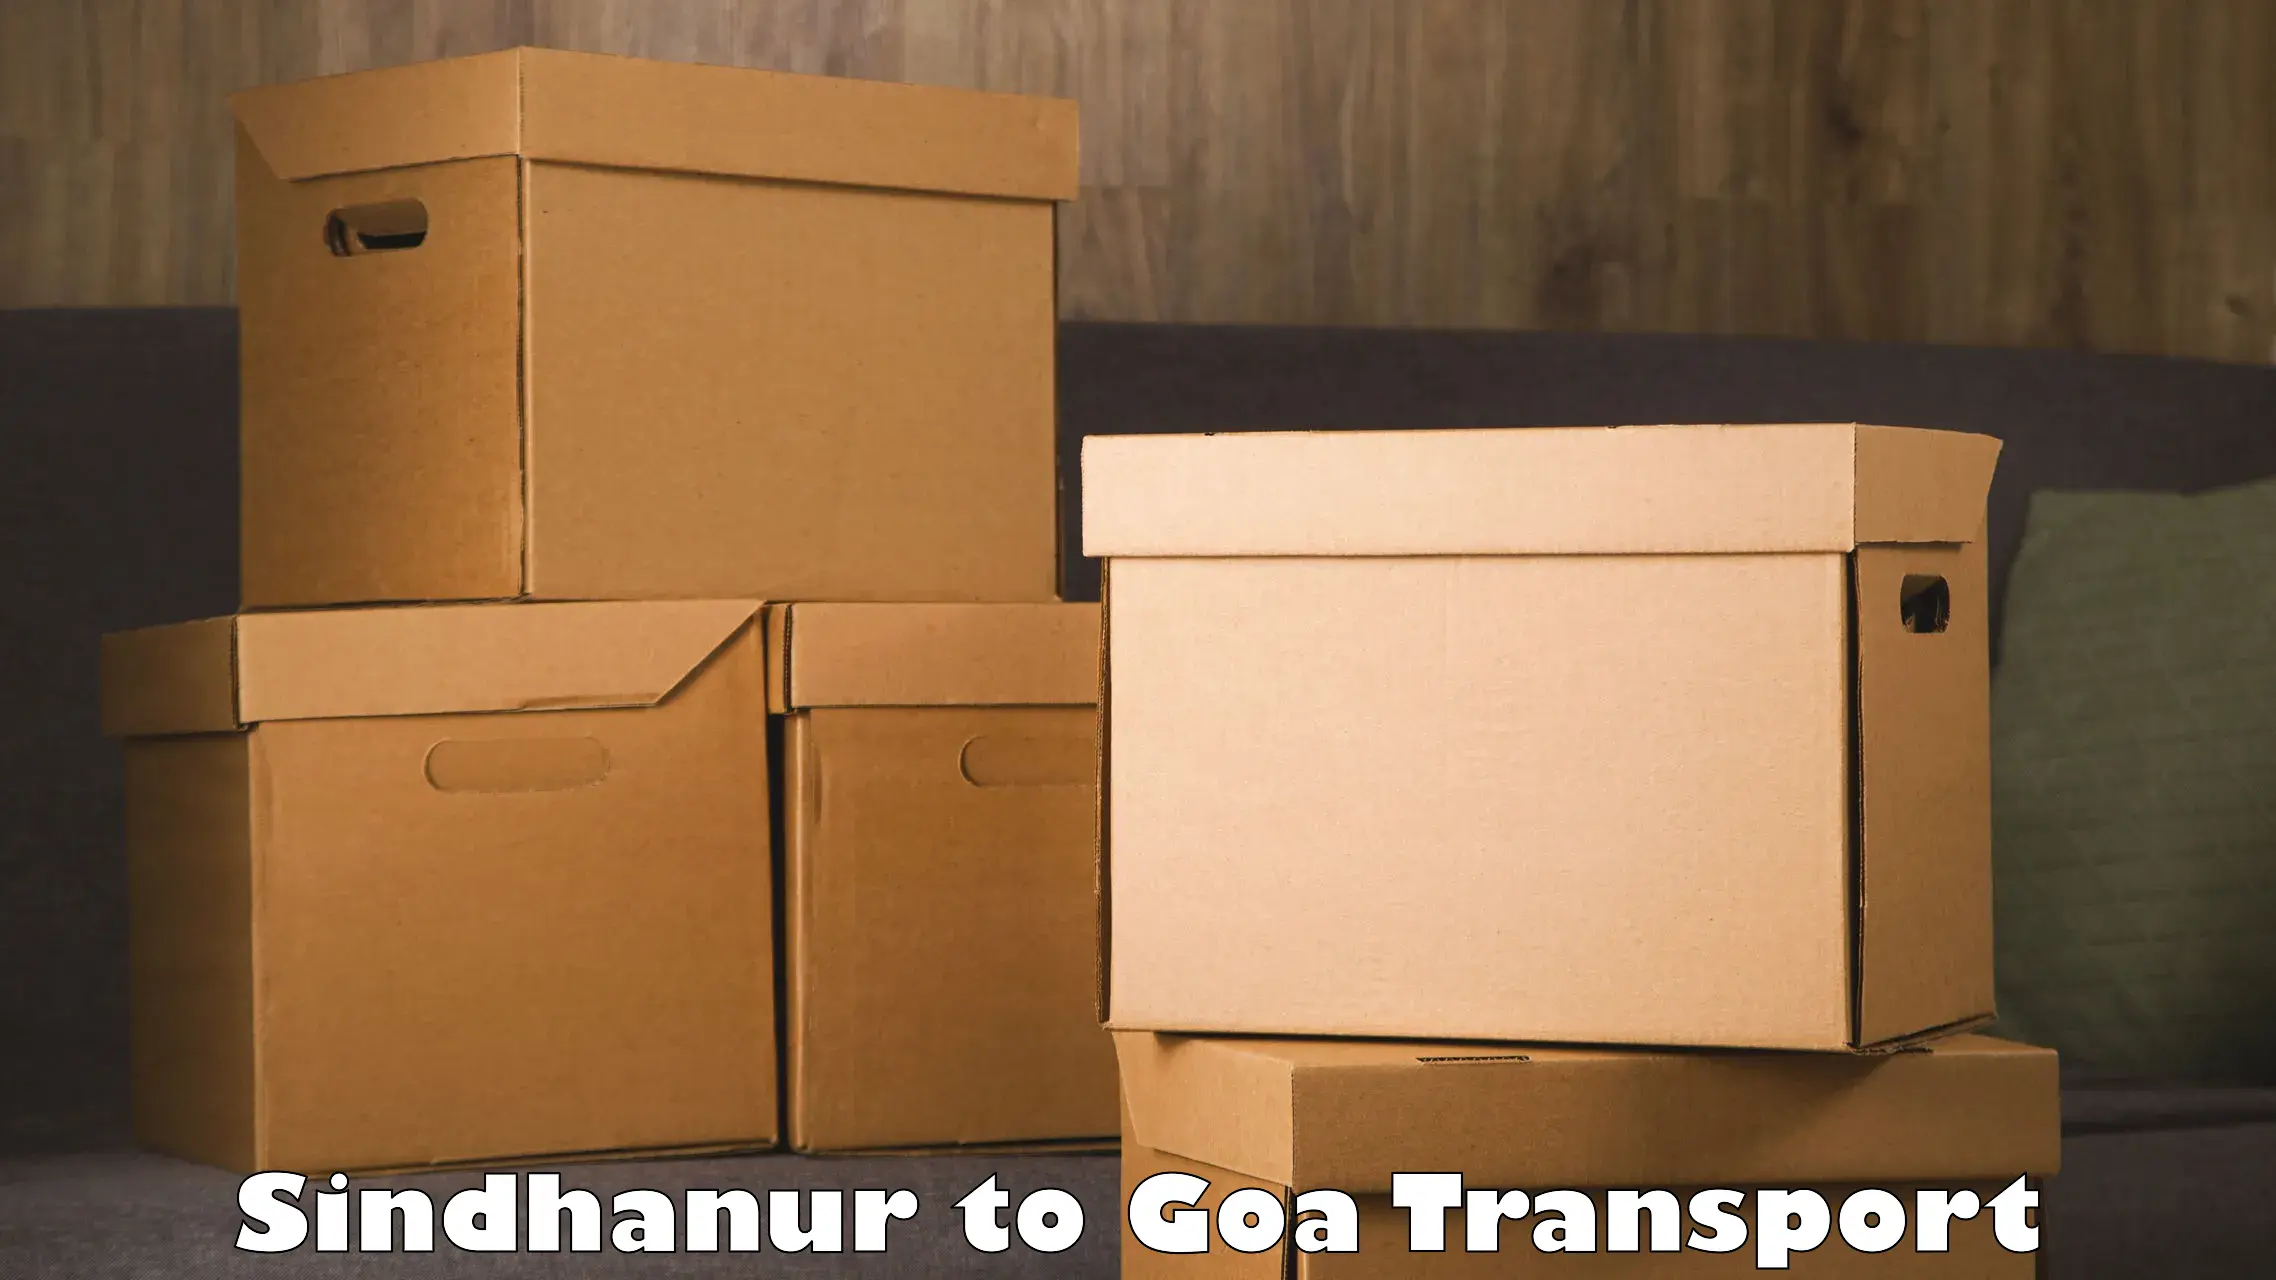 Online transport service Sindhanur to Goa